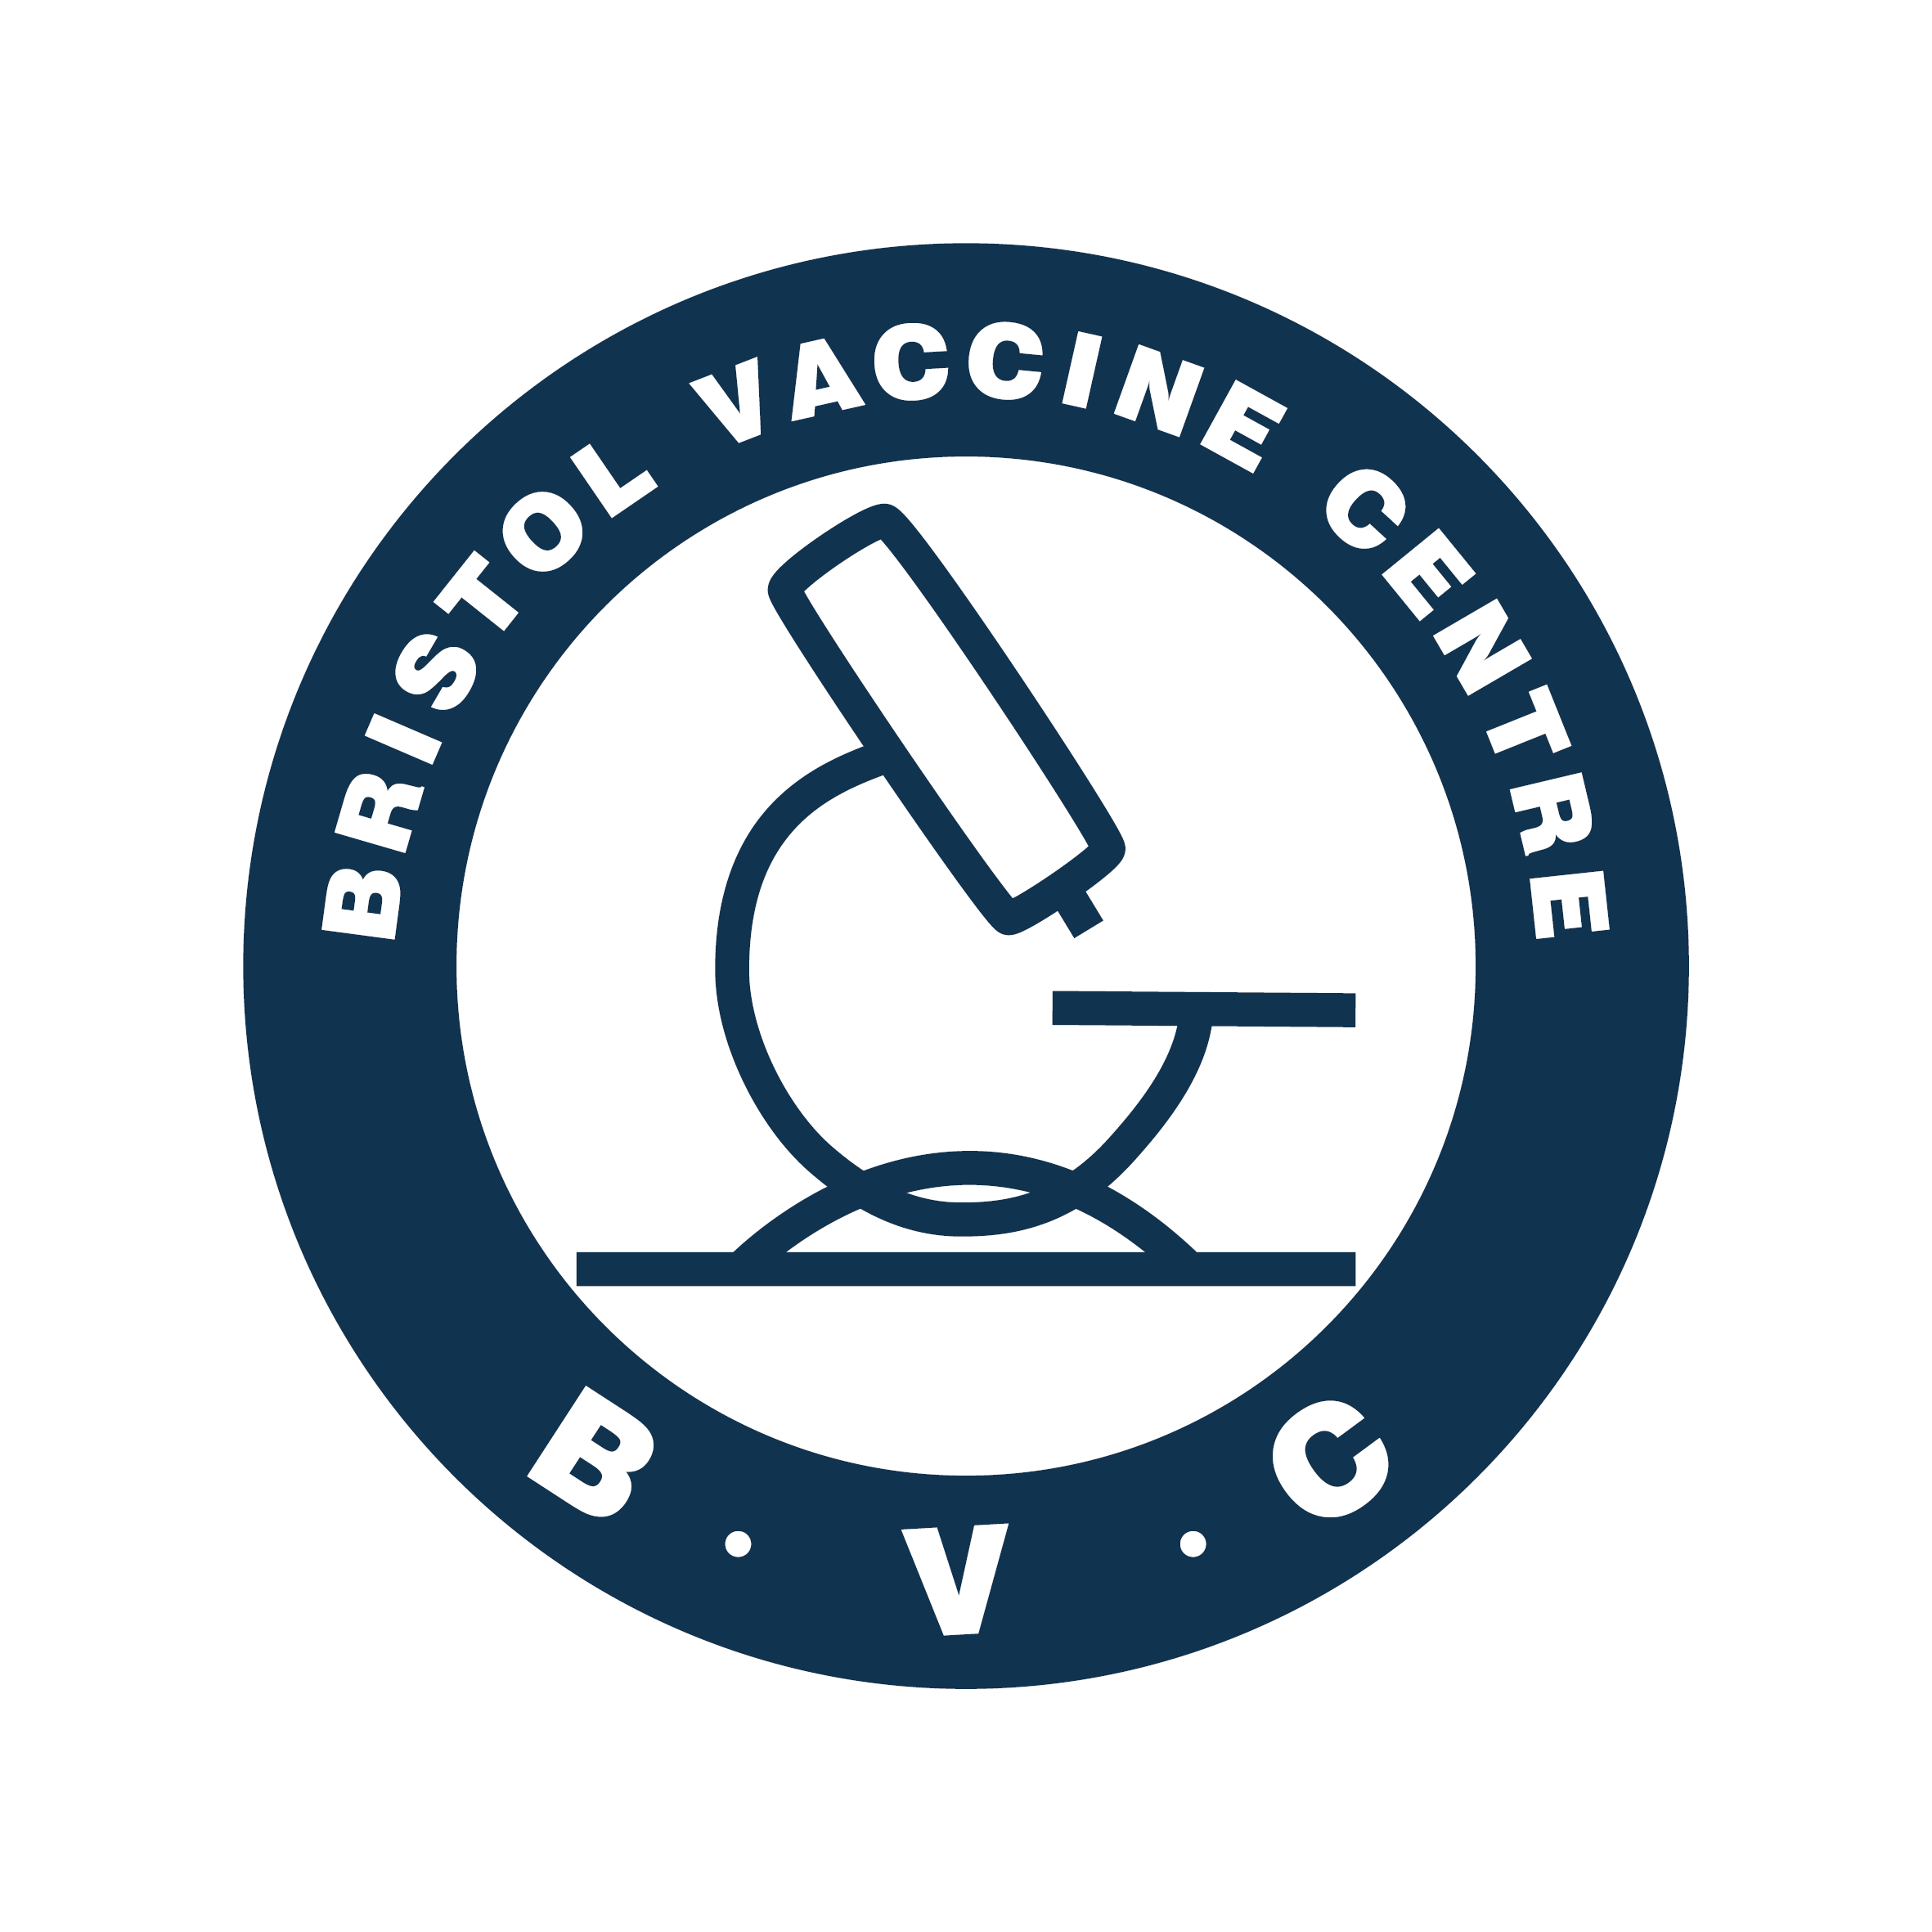 Bristol Vaccine Centre logo